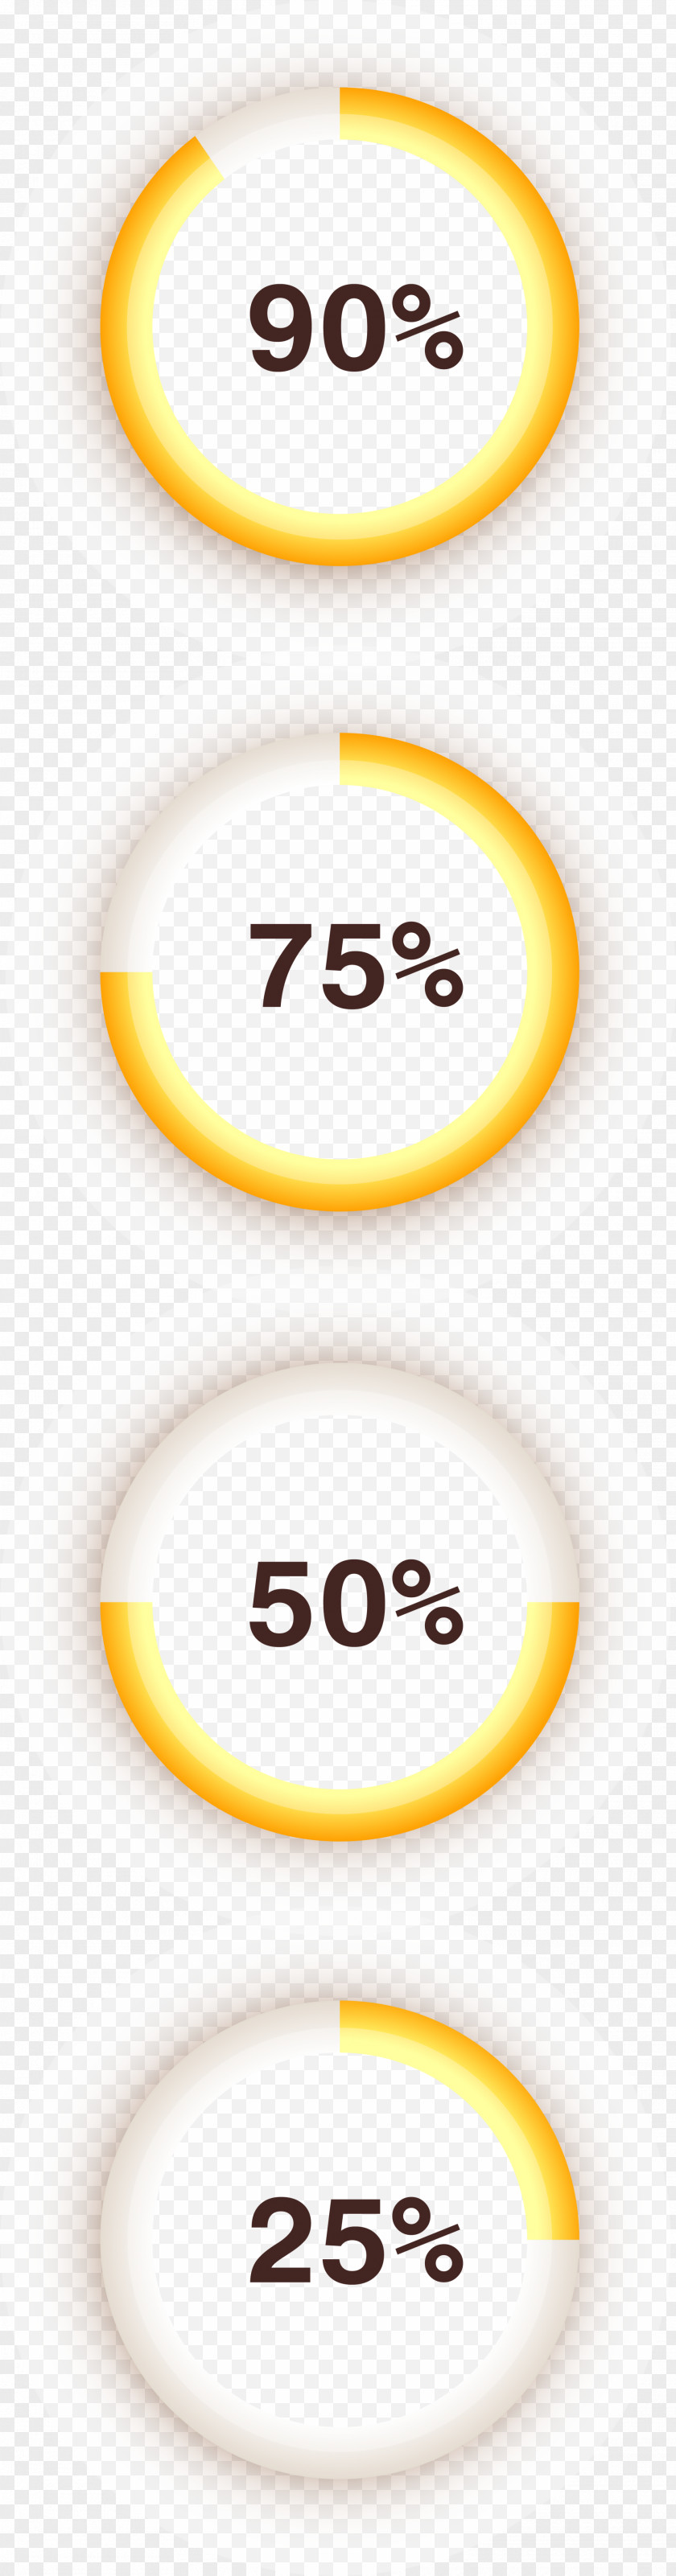 Hand Painted Yellow Circle Download Progress Bar PNG